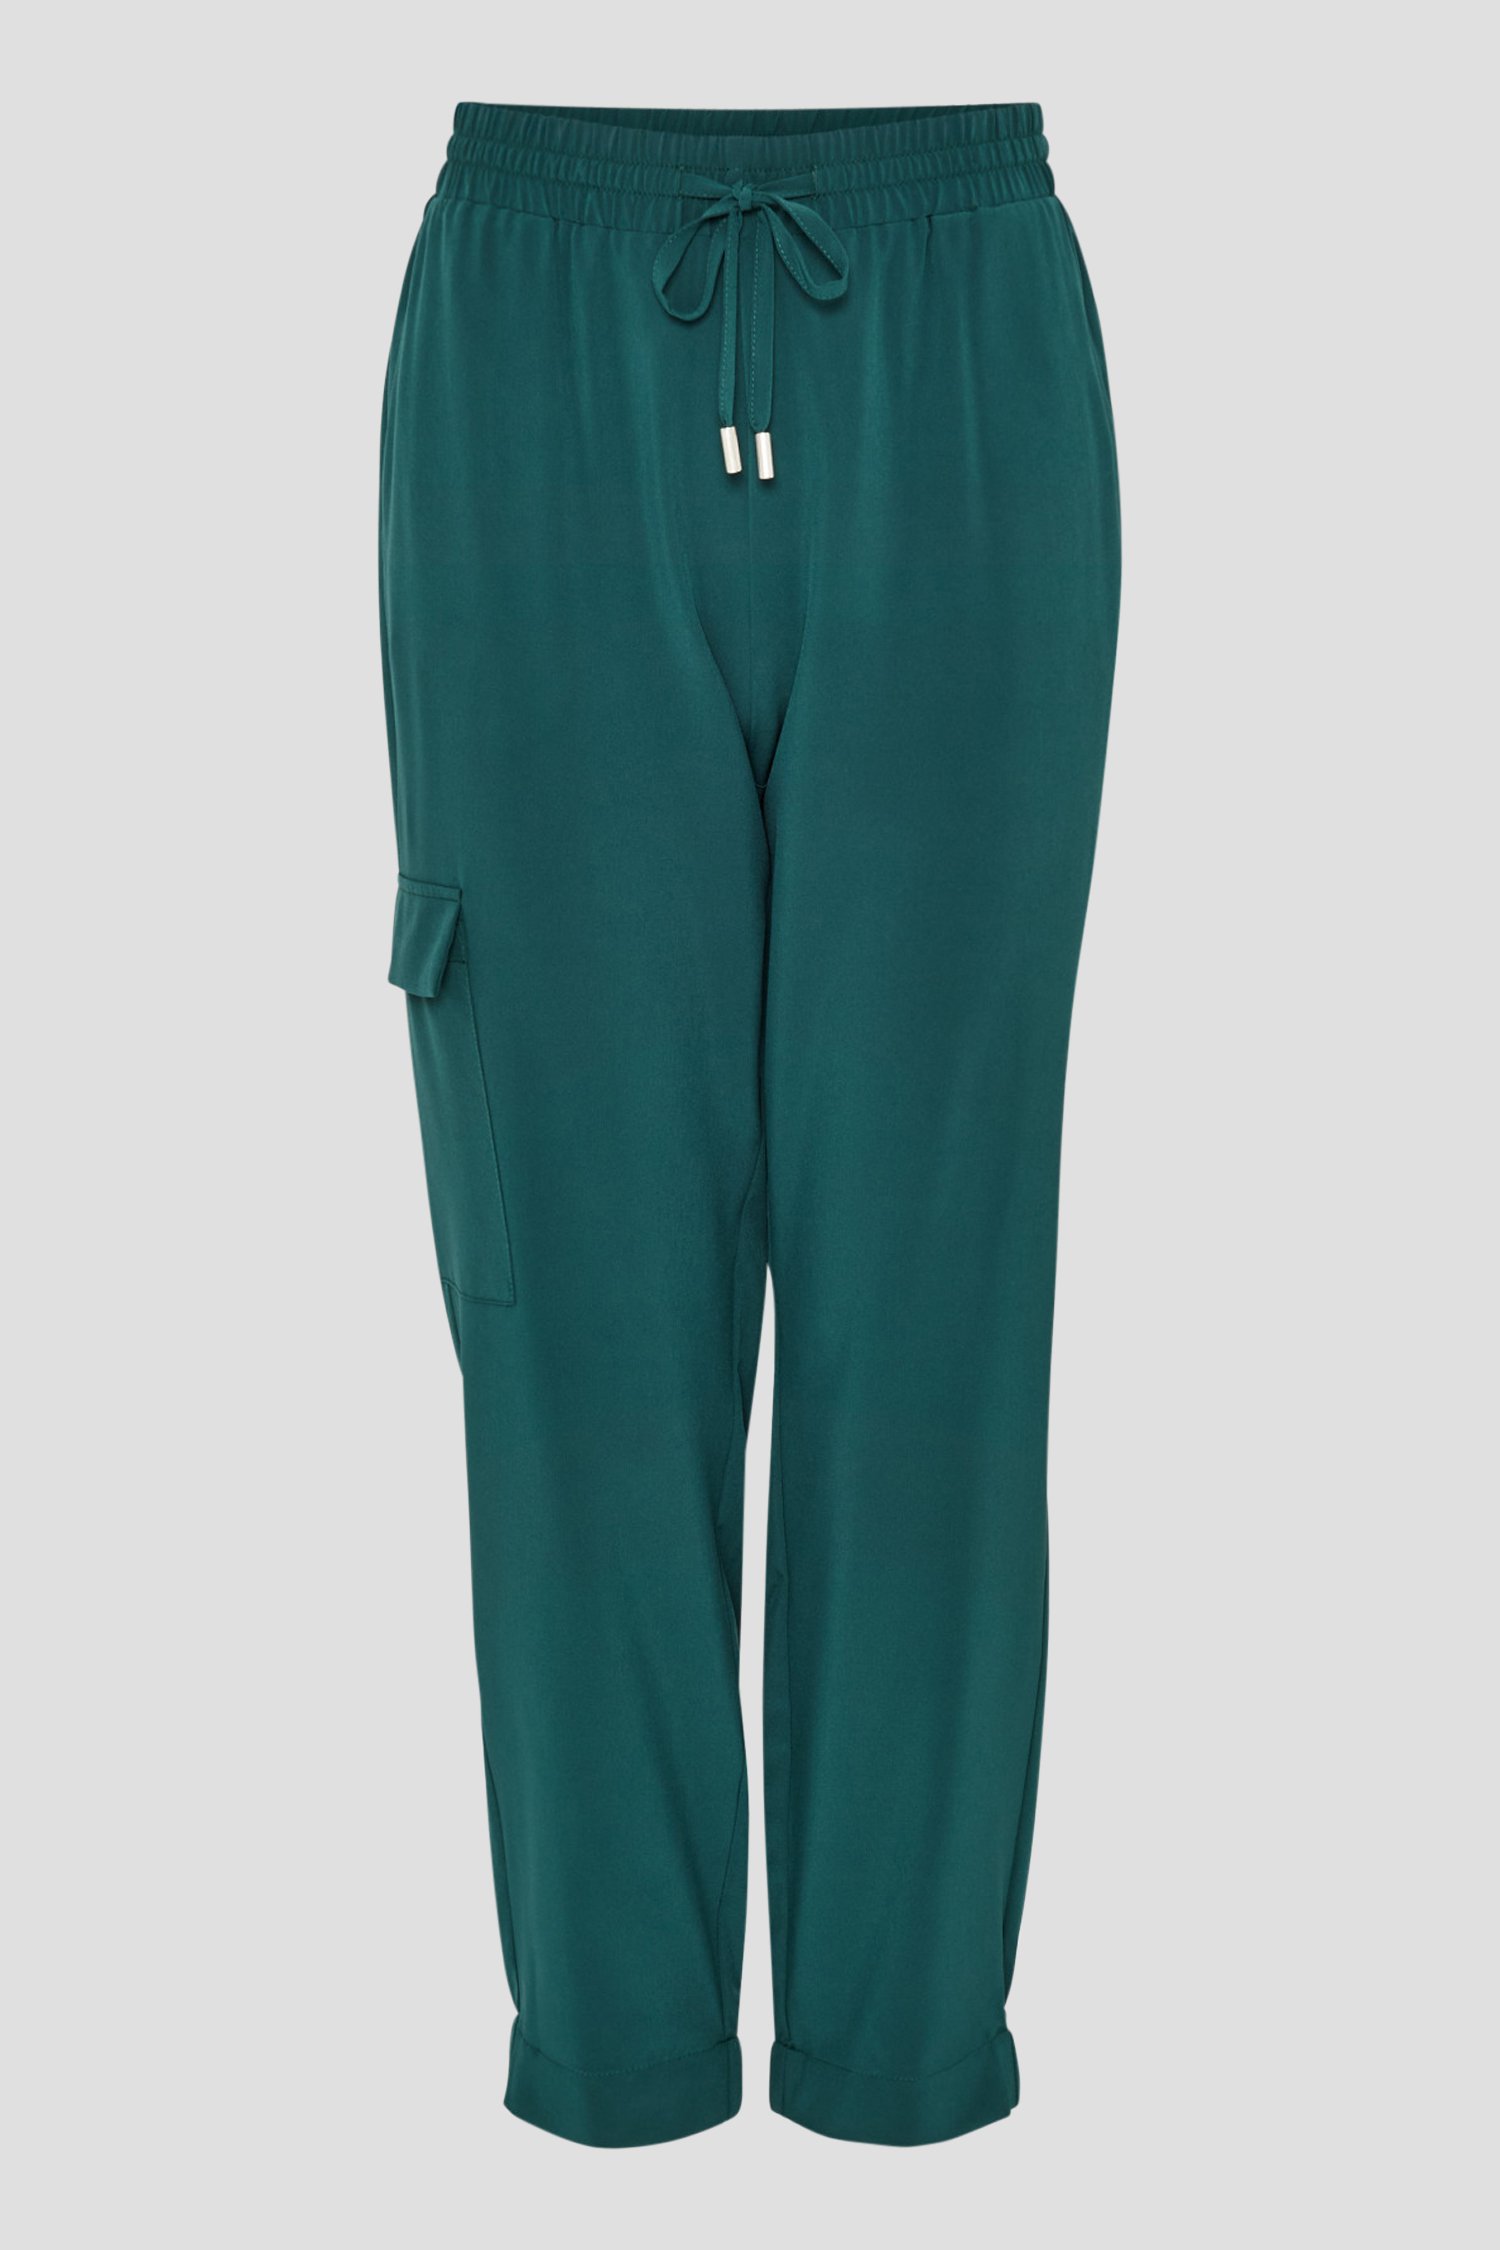 Pantalon cargo bleu vert, aéré de Opus pour Femmes